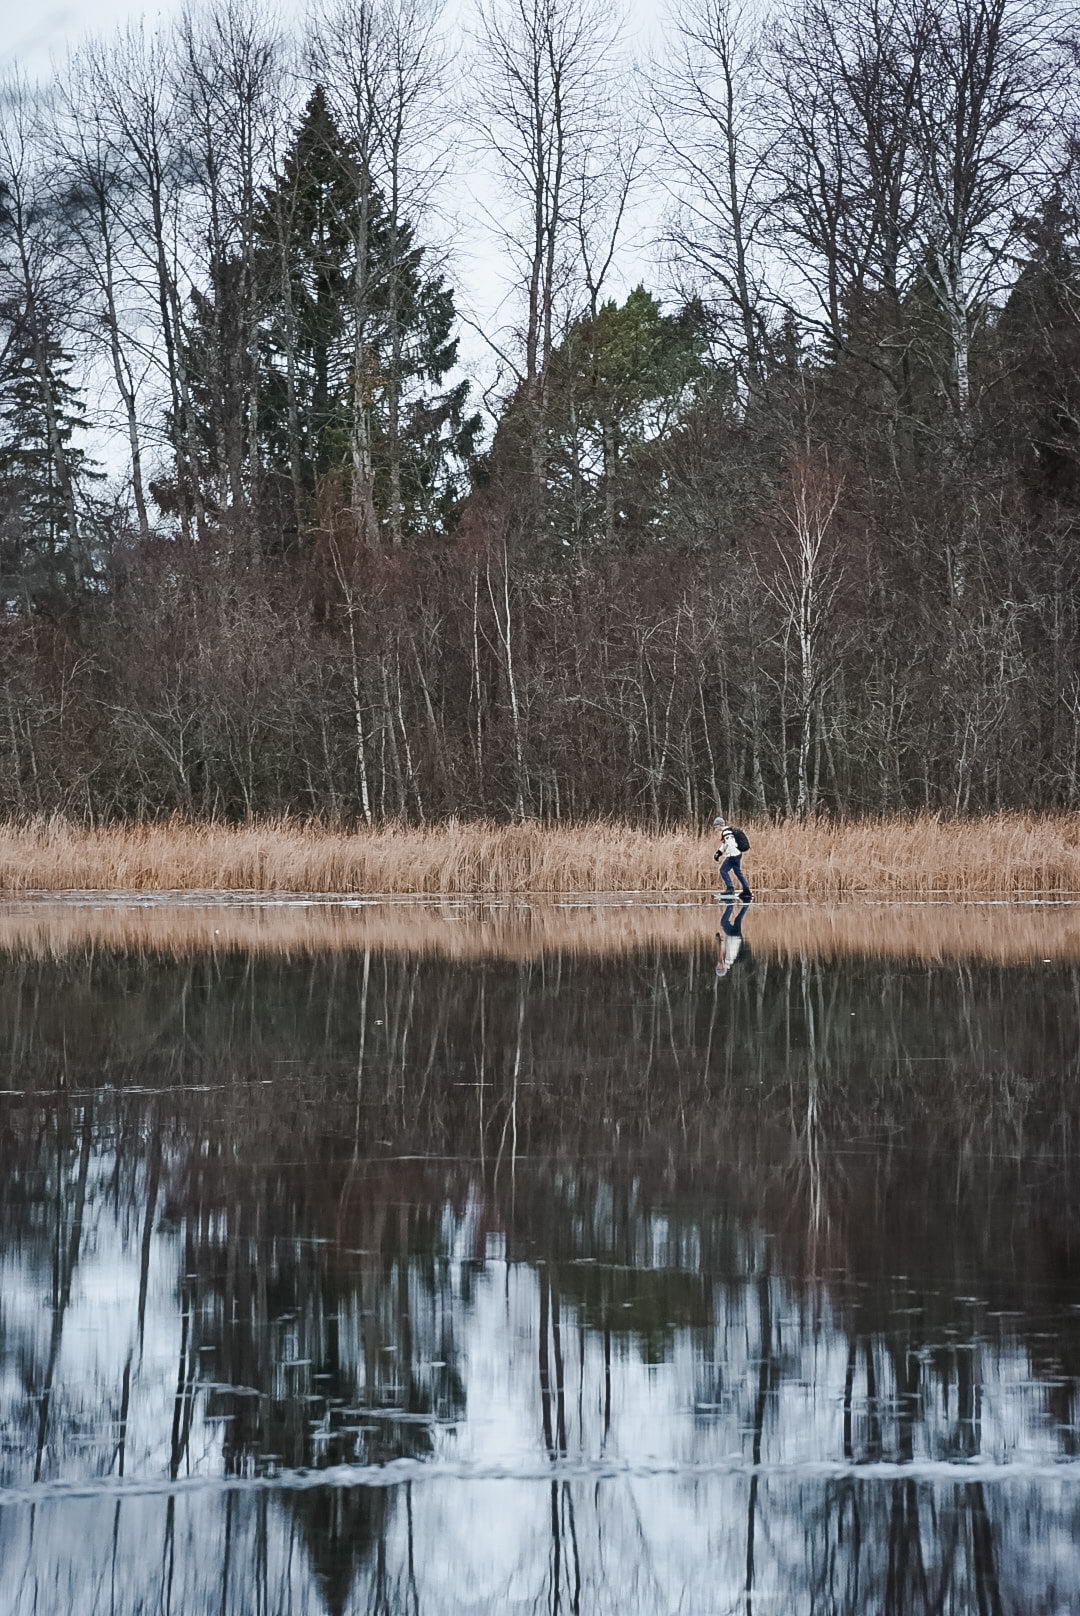 Skridskor på sjön Judarn – Photo from Judarskogens naturreservat by Marcus S. (04/04/2022)